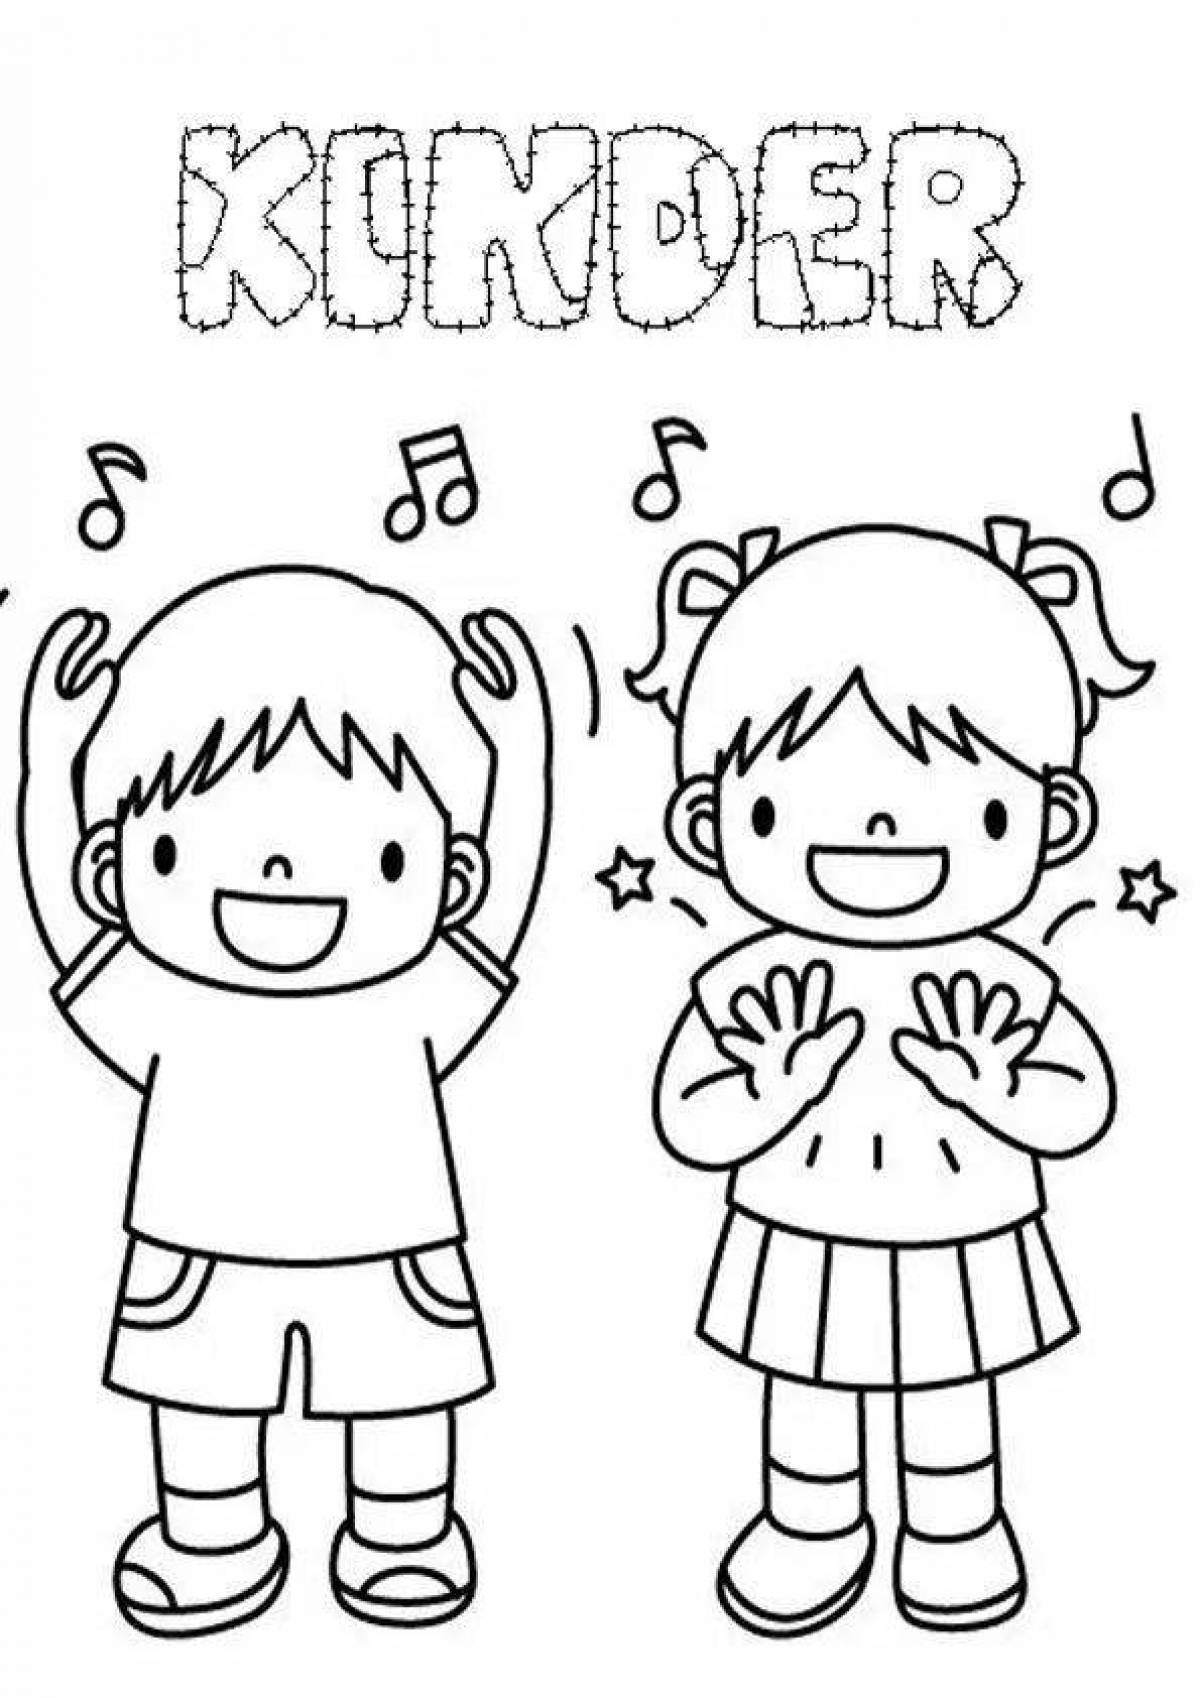 Excited children sing